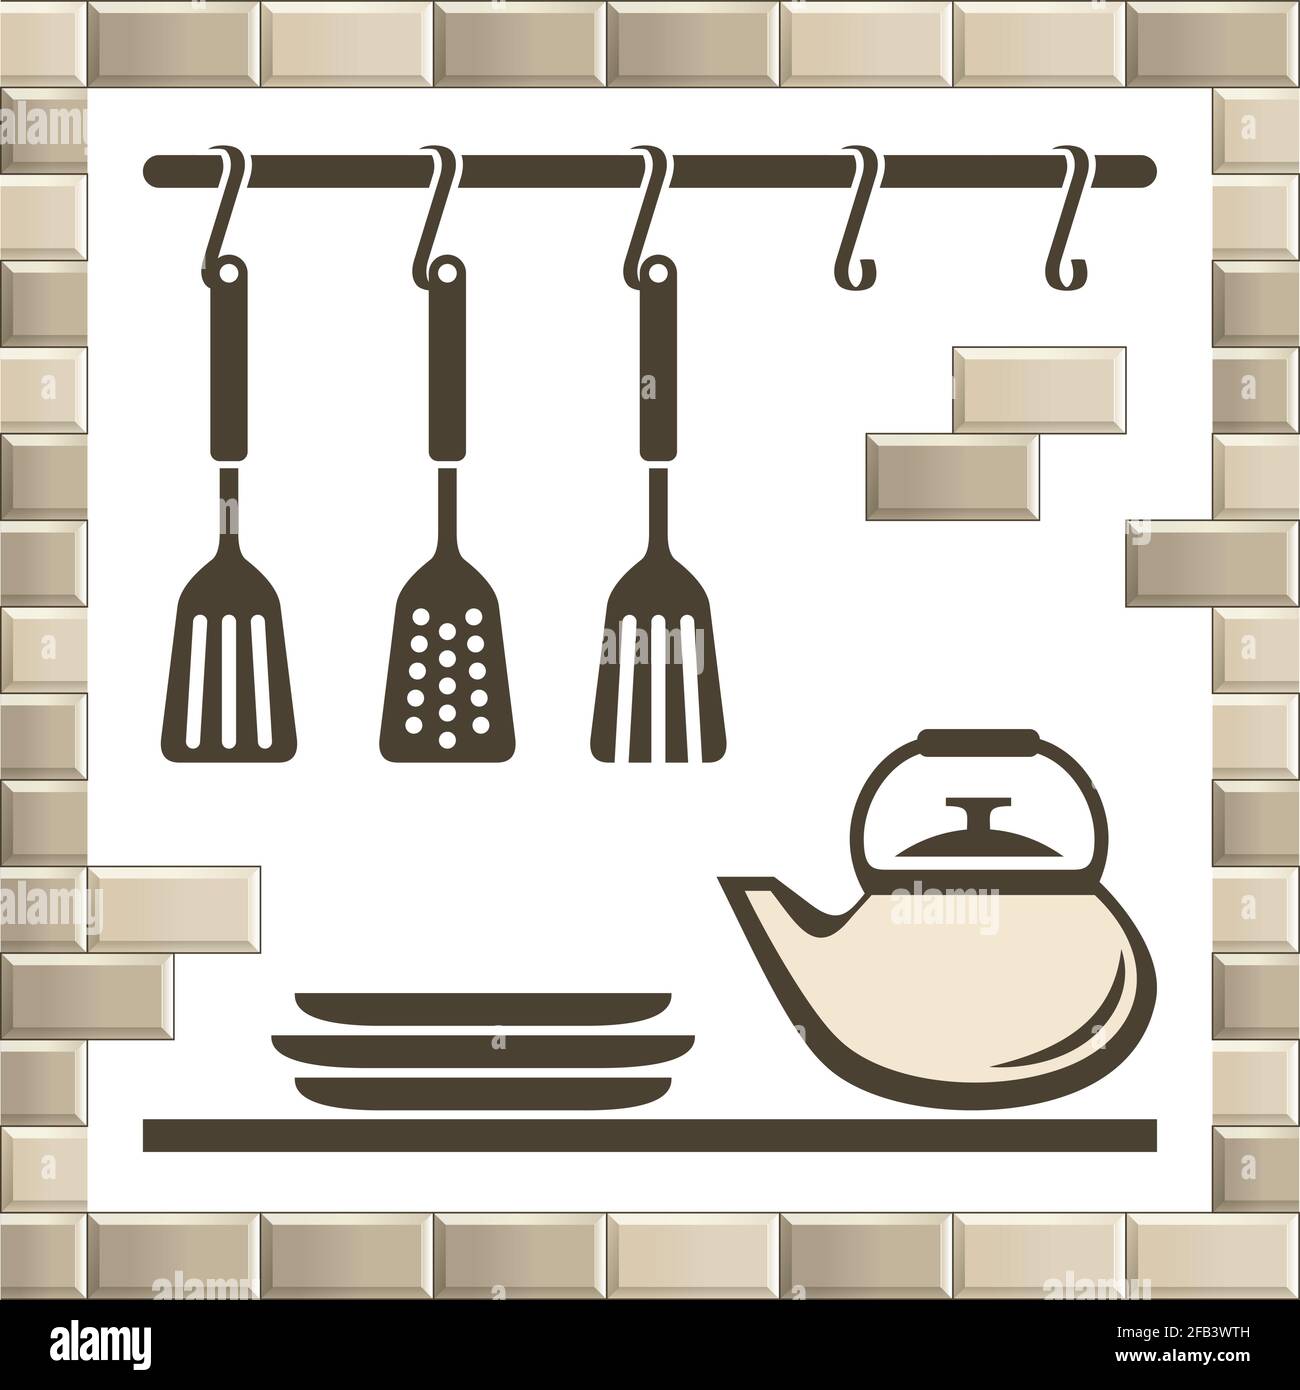 Vintage Vektor-Satz von Küchengeräten Symbole isoliert auf weiß. Flache Cartoon-Grafik Silhouetten von Teekocher, Wasserkocher, Kochlöffel, Teller Symbole in bri Stock Vektor